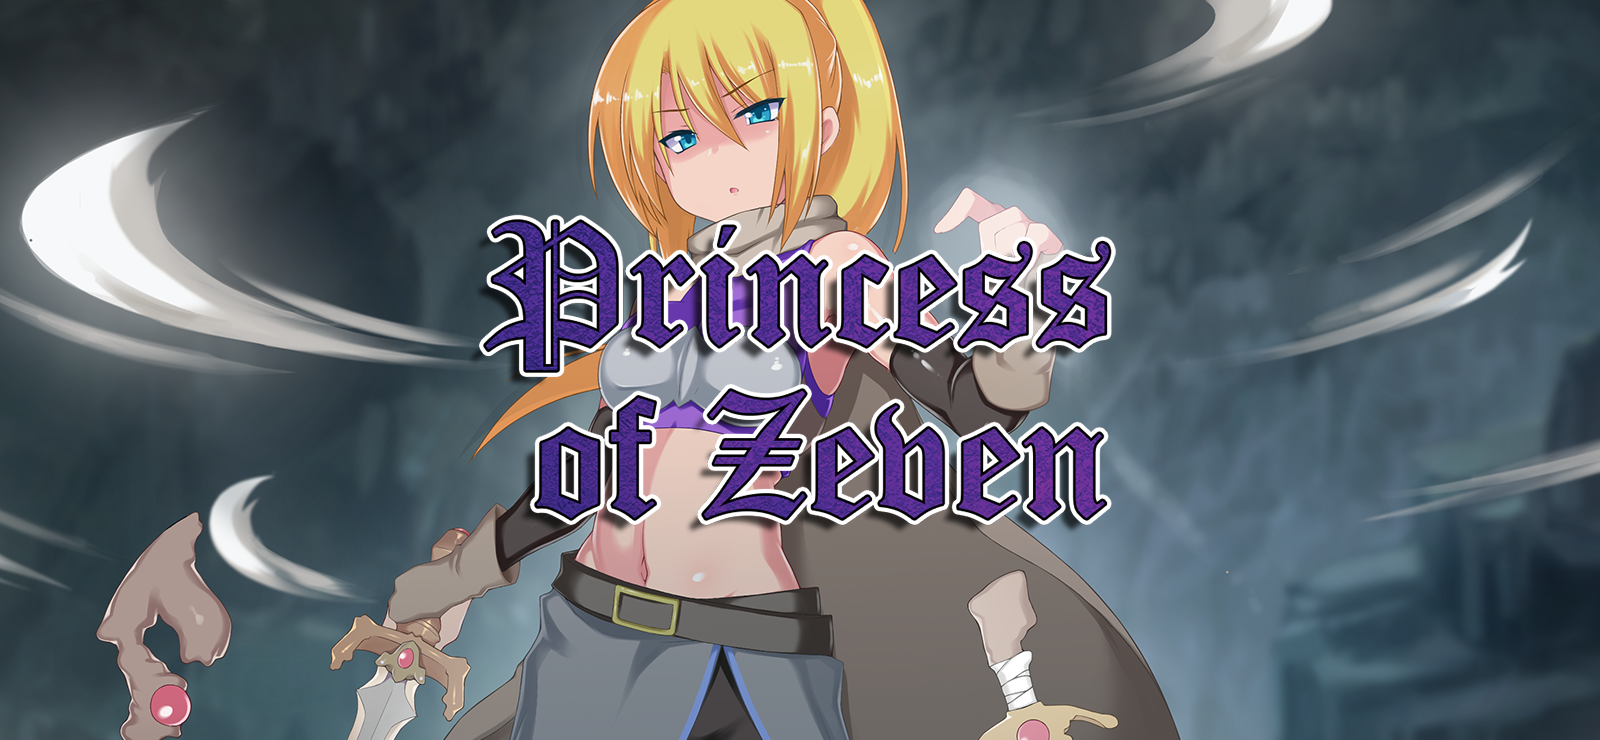 Princess Of Zeven